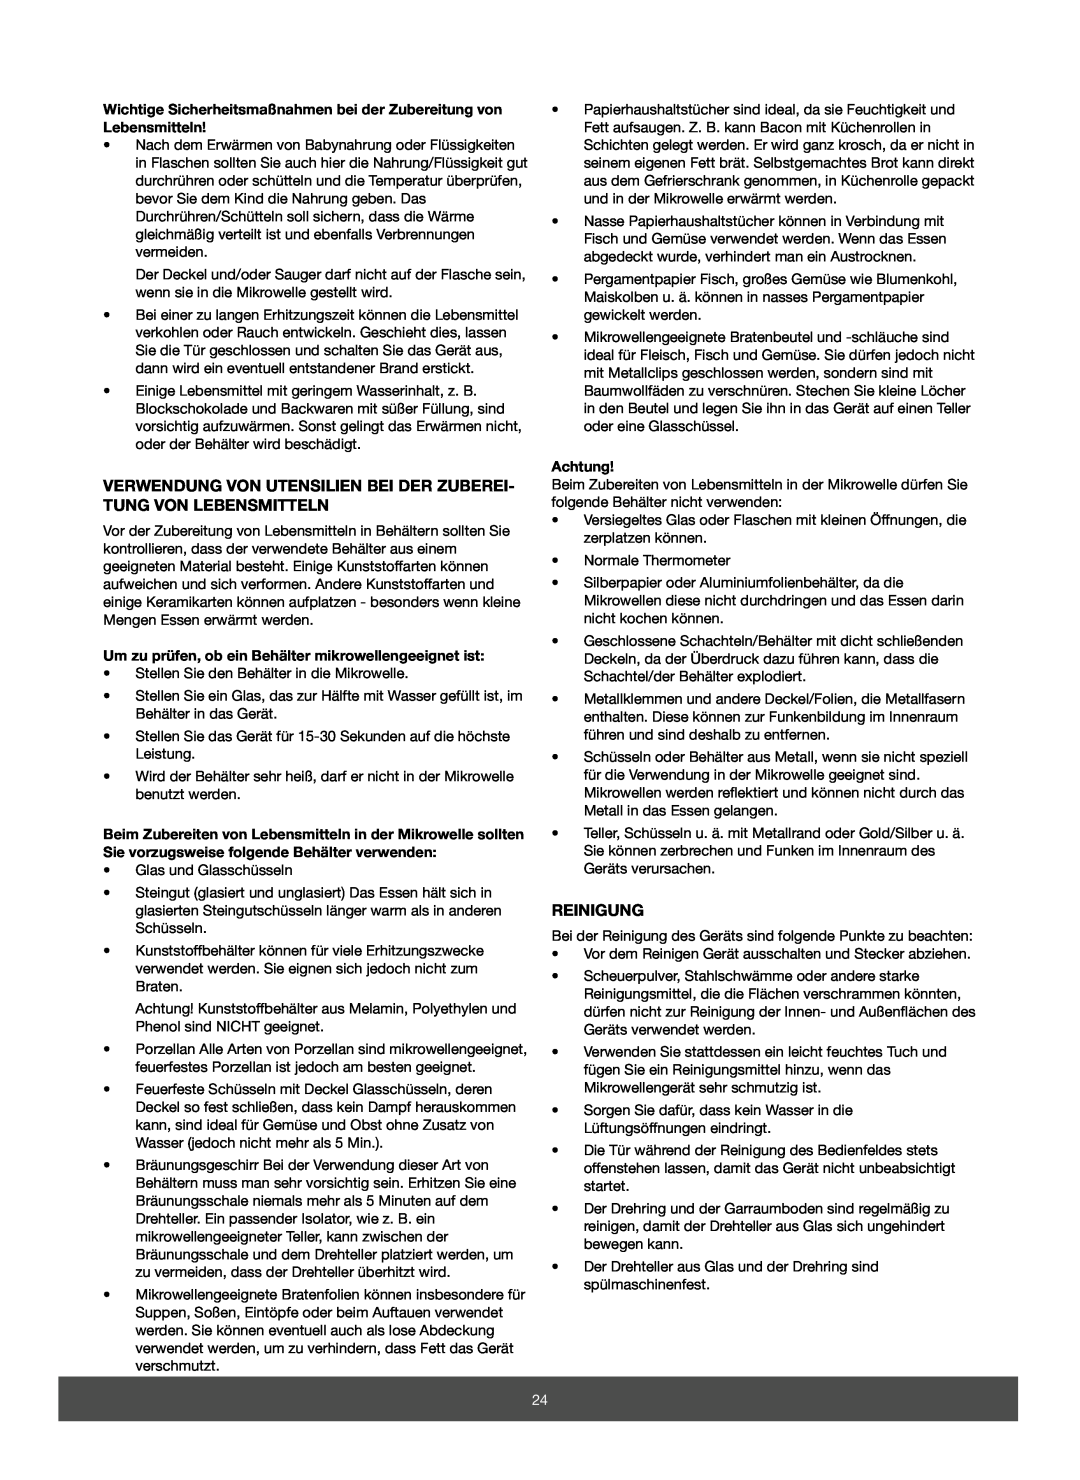 Melissa 653-067/068 manual Verwendung Von Utensilien Bei Der Zuberei- Tung Von Lebensmitteln, Reinigung, Achtung 